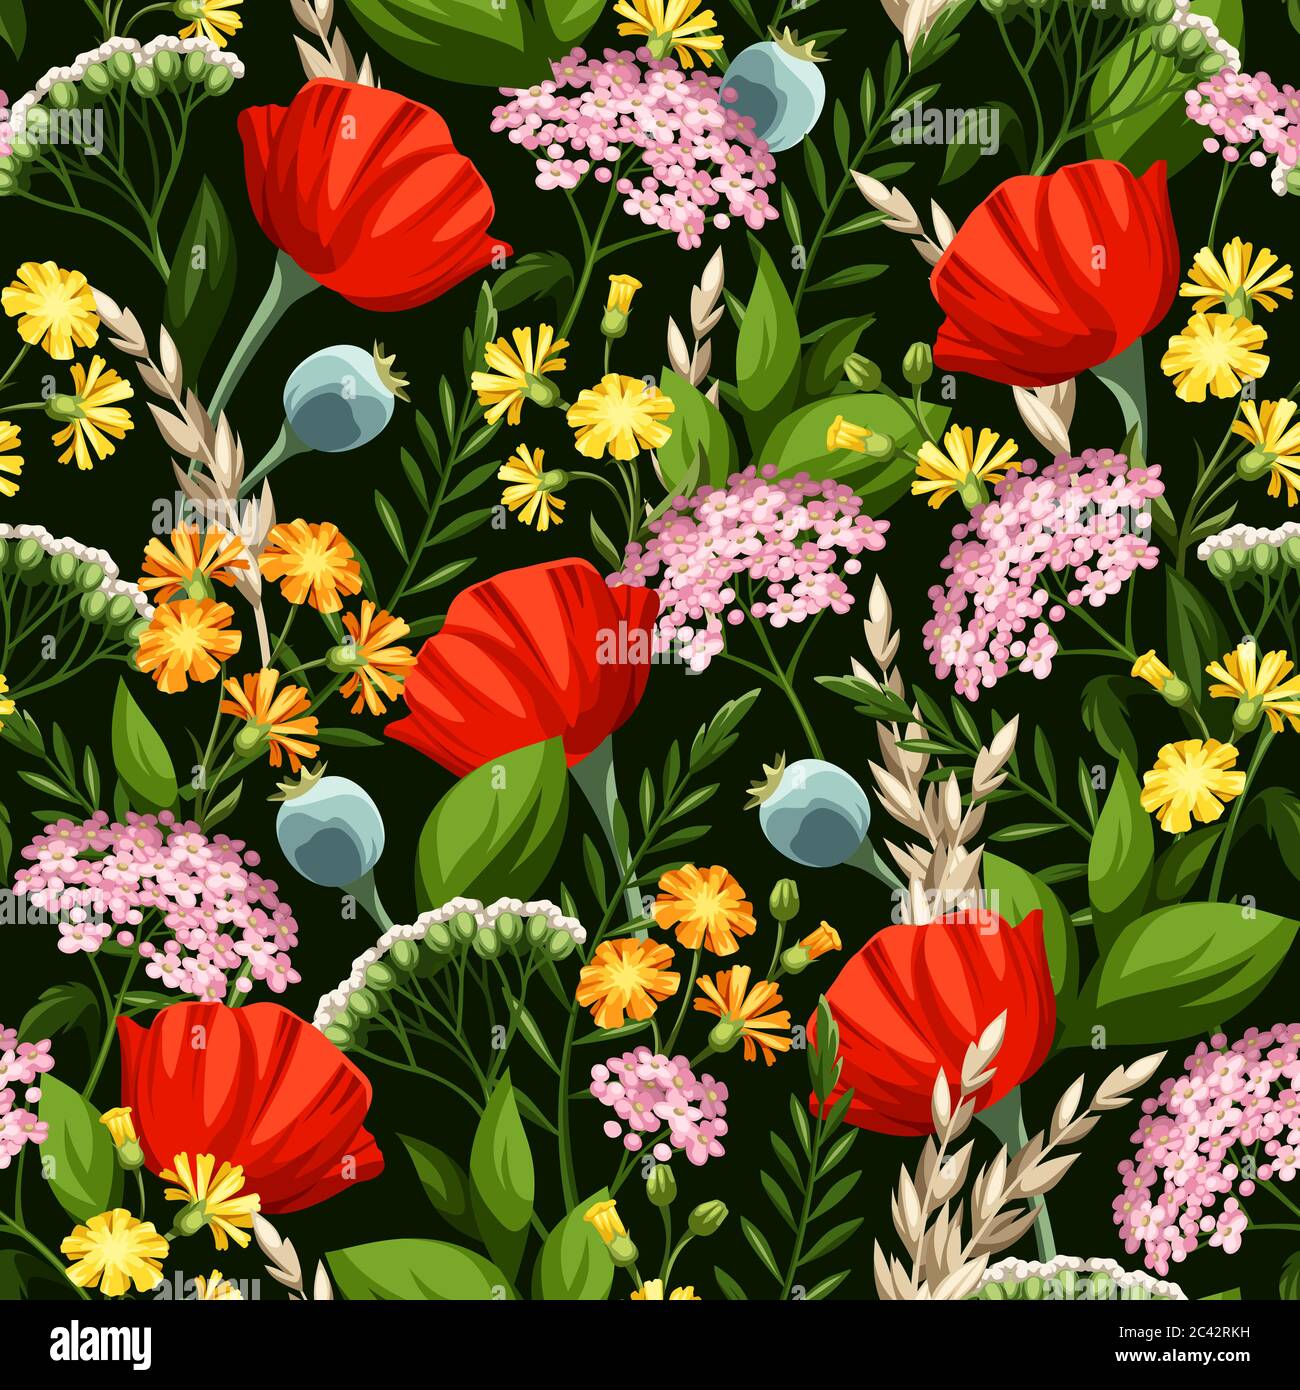 Patrón floral con flores silvestres de colores vivos sobre un fondo verde oscuro. Ilustración del Vector